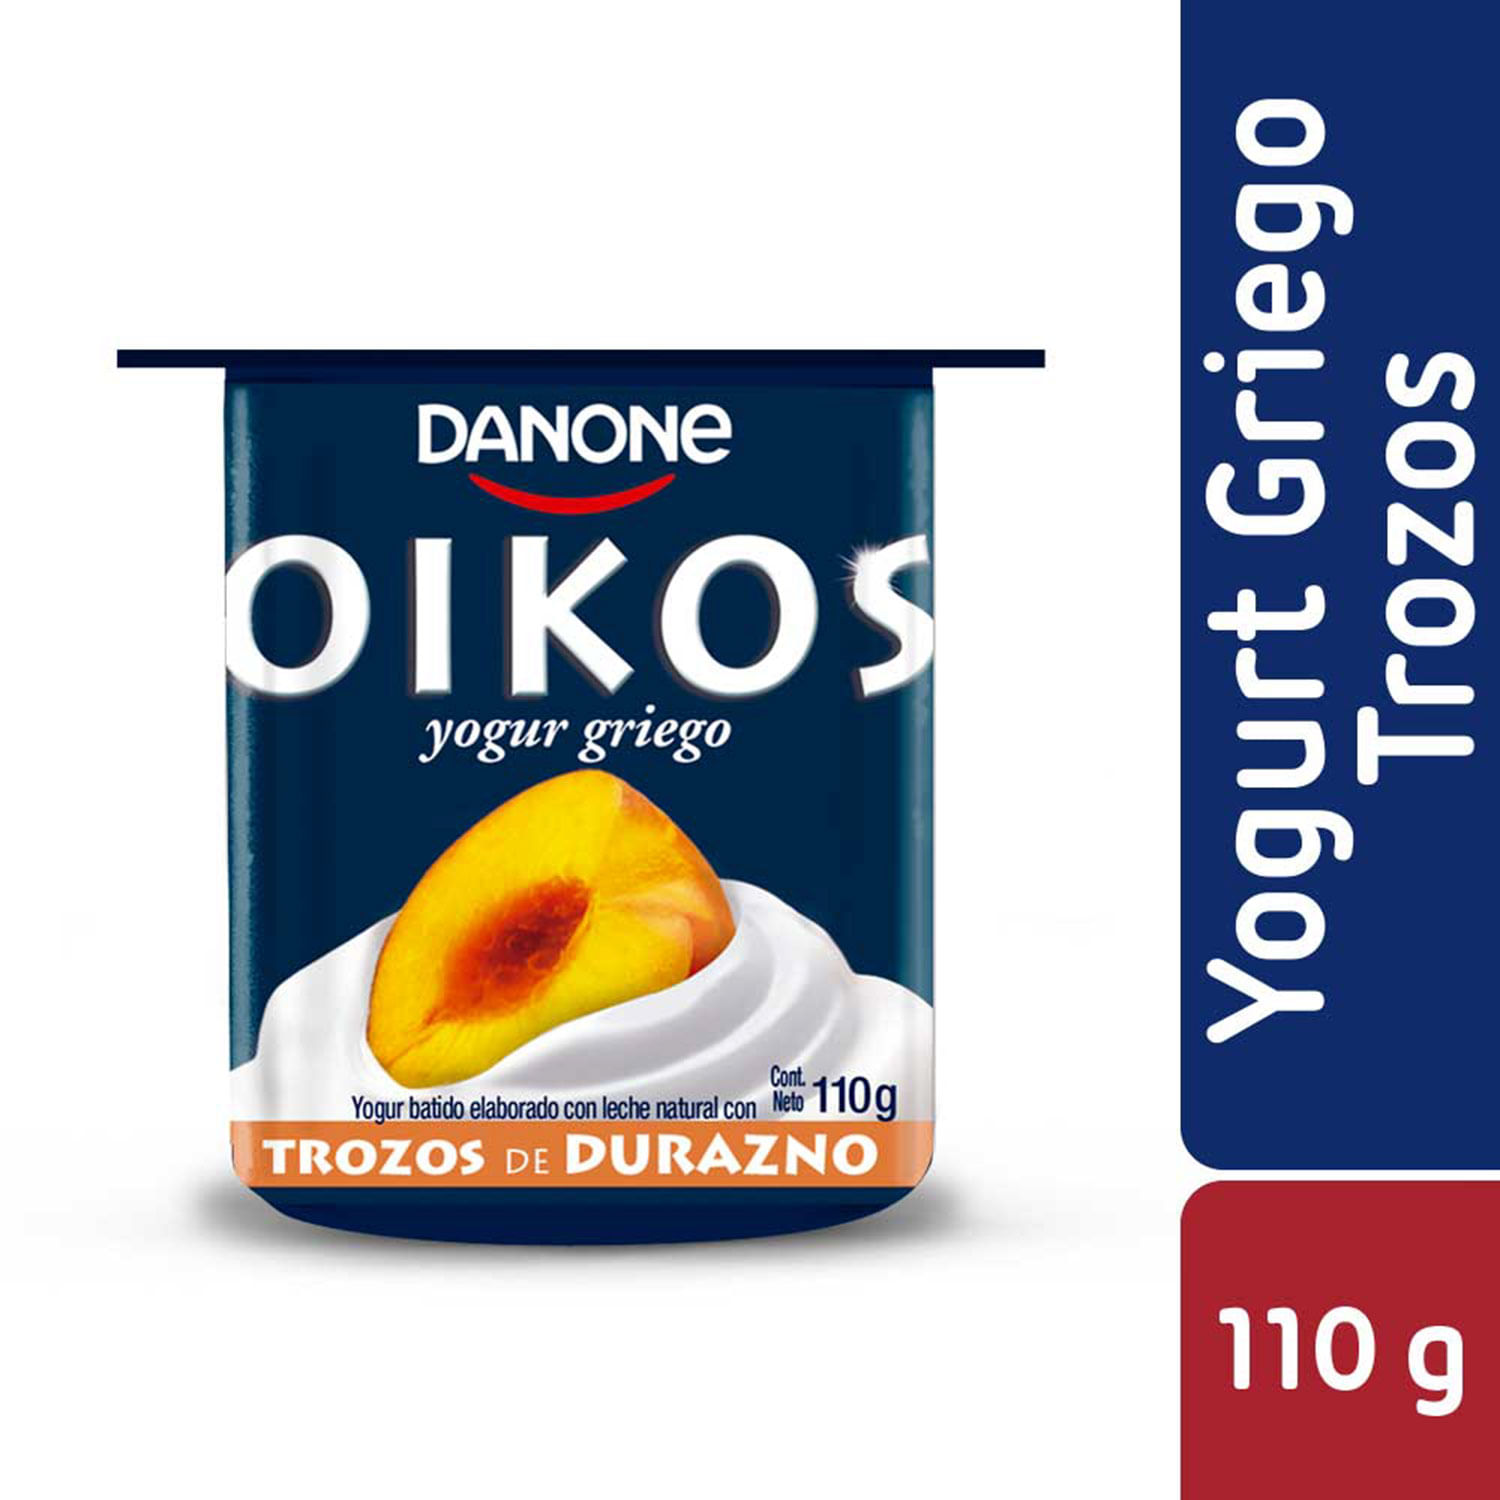 Yoghurt griego trozos frutilla